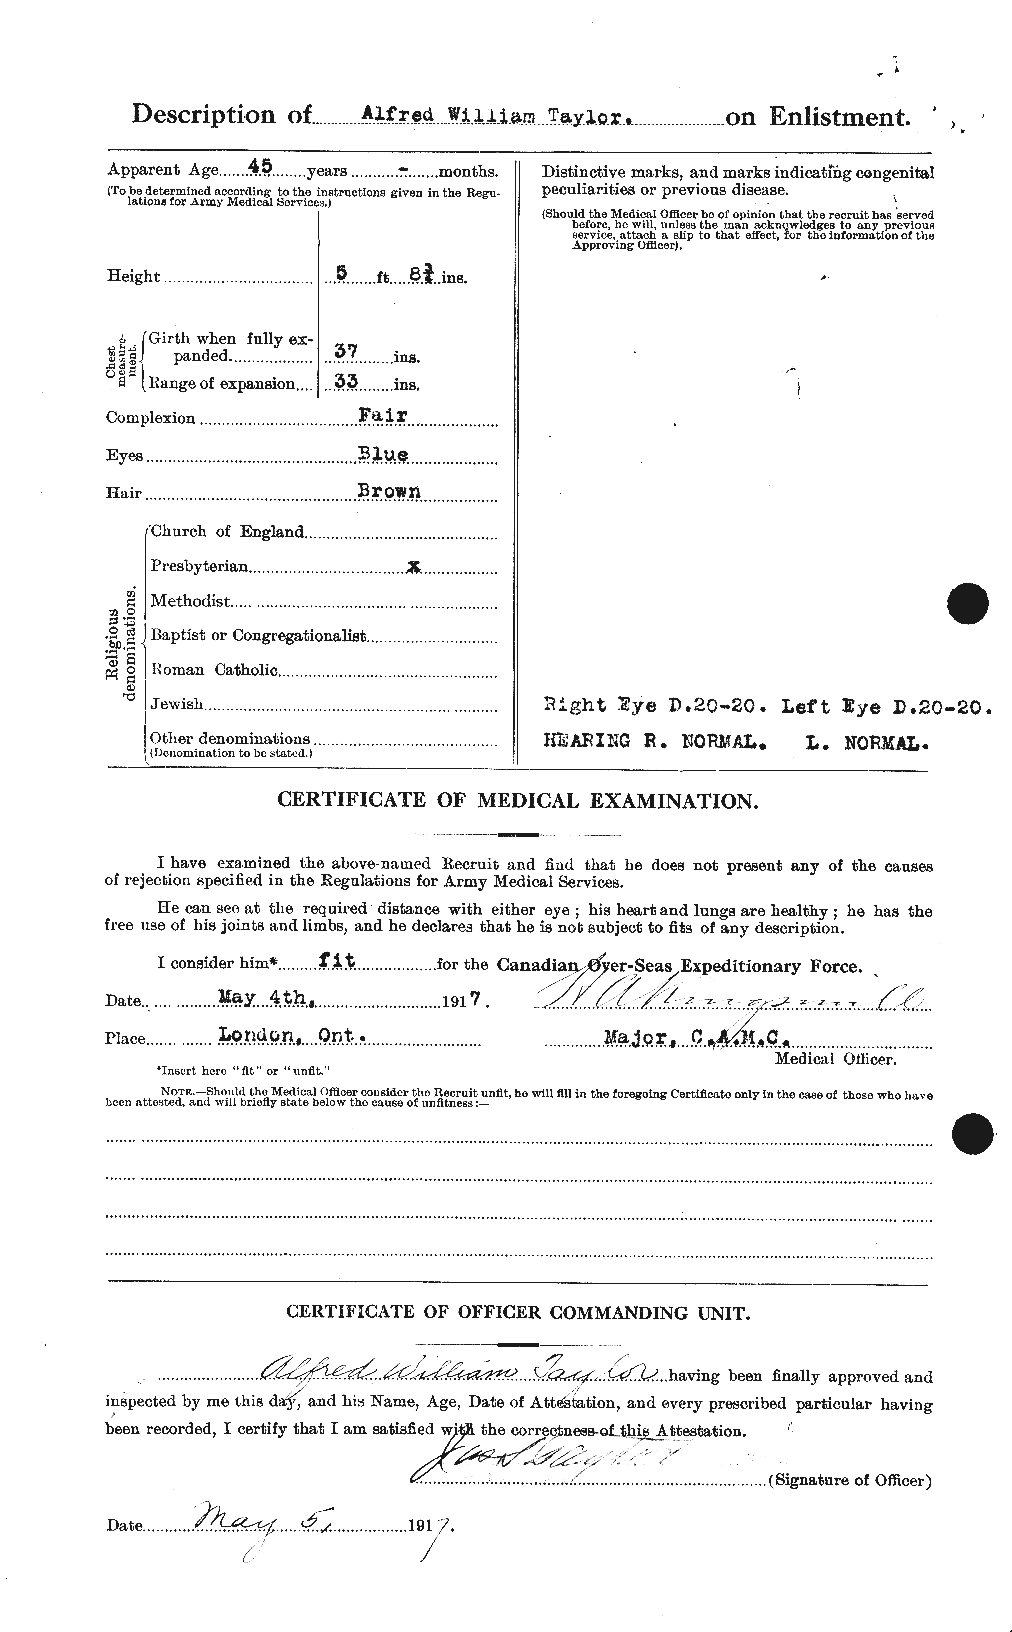 Dossiers du Personnel de la Première Guerre mondiale - CEC 626199b